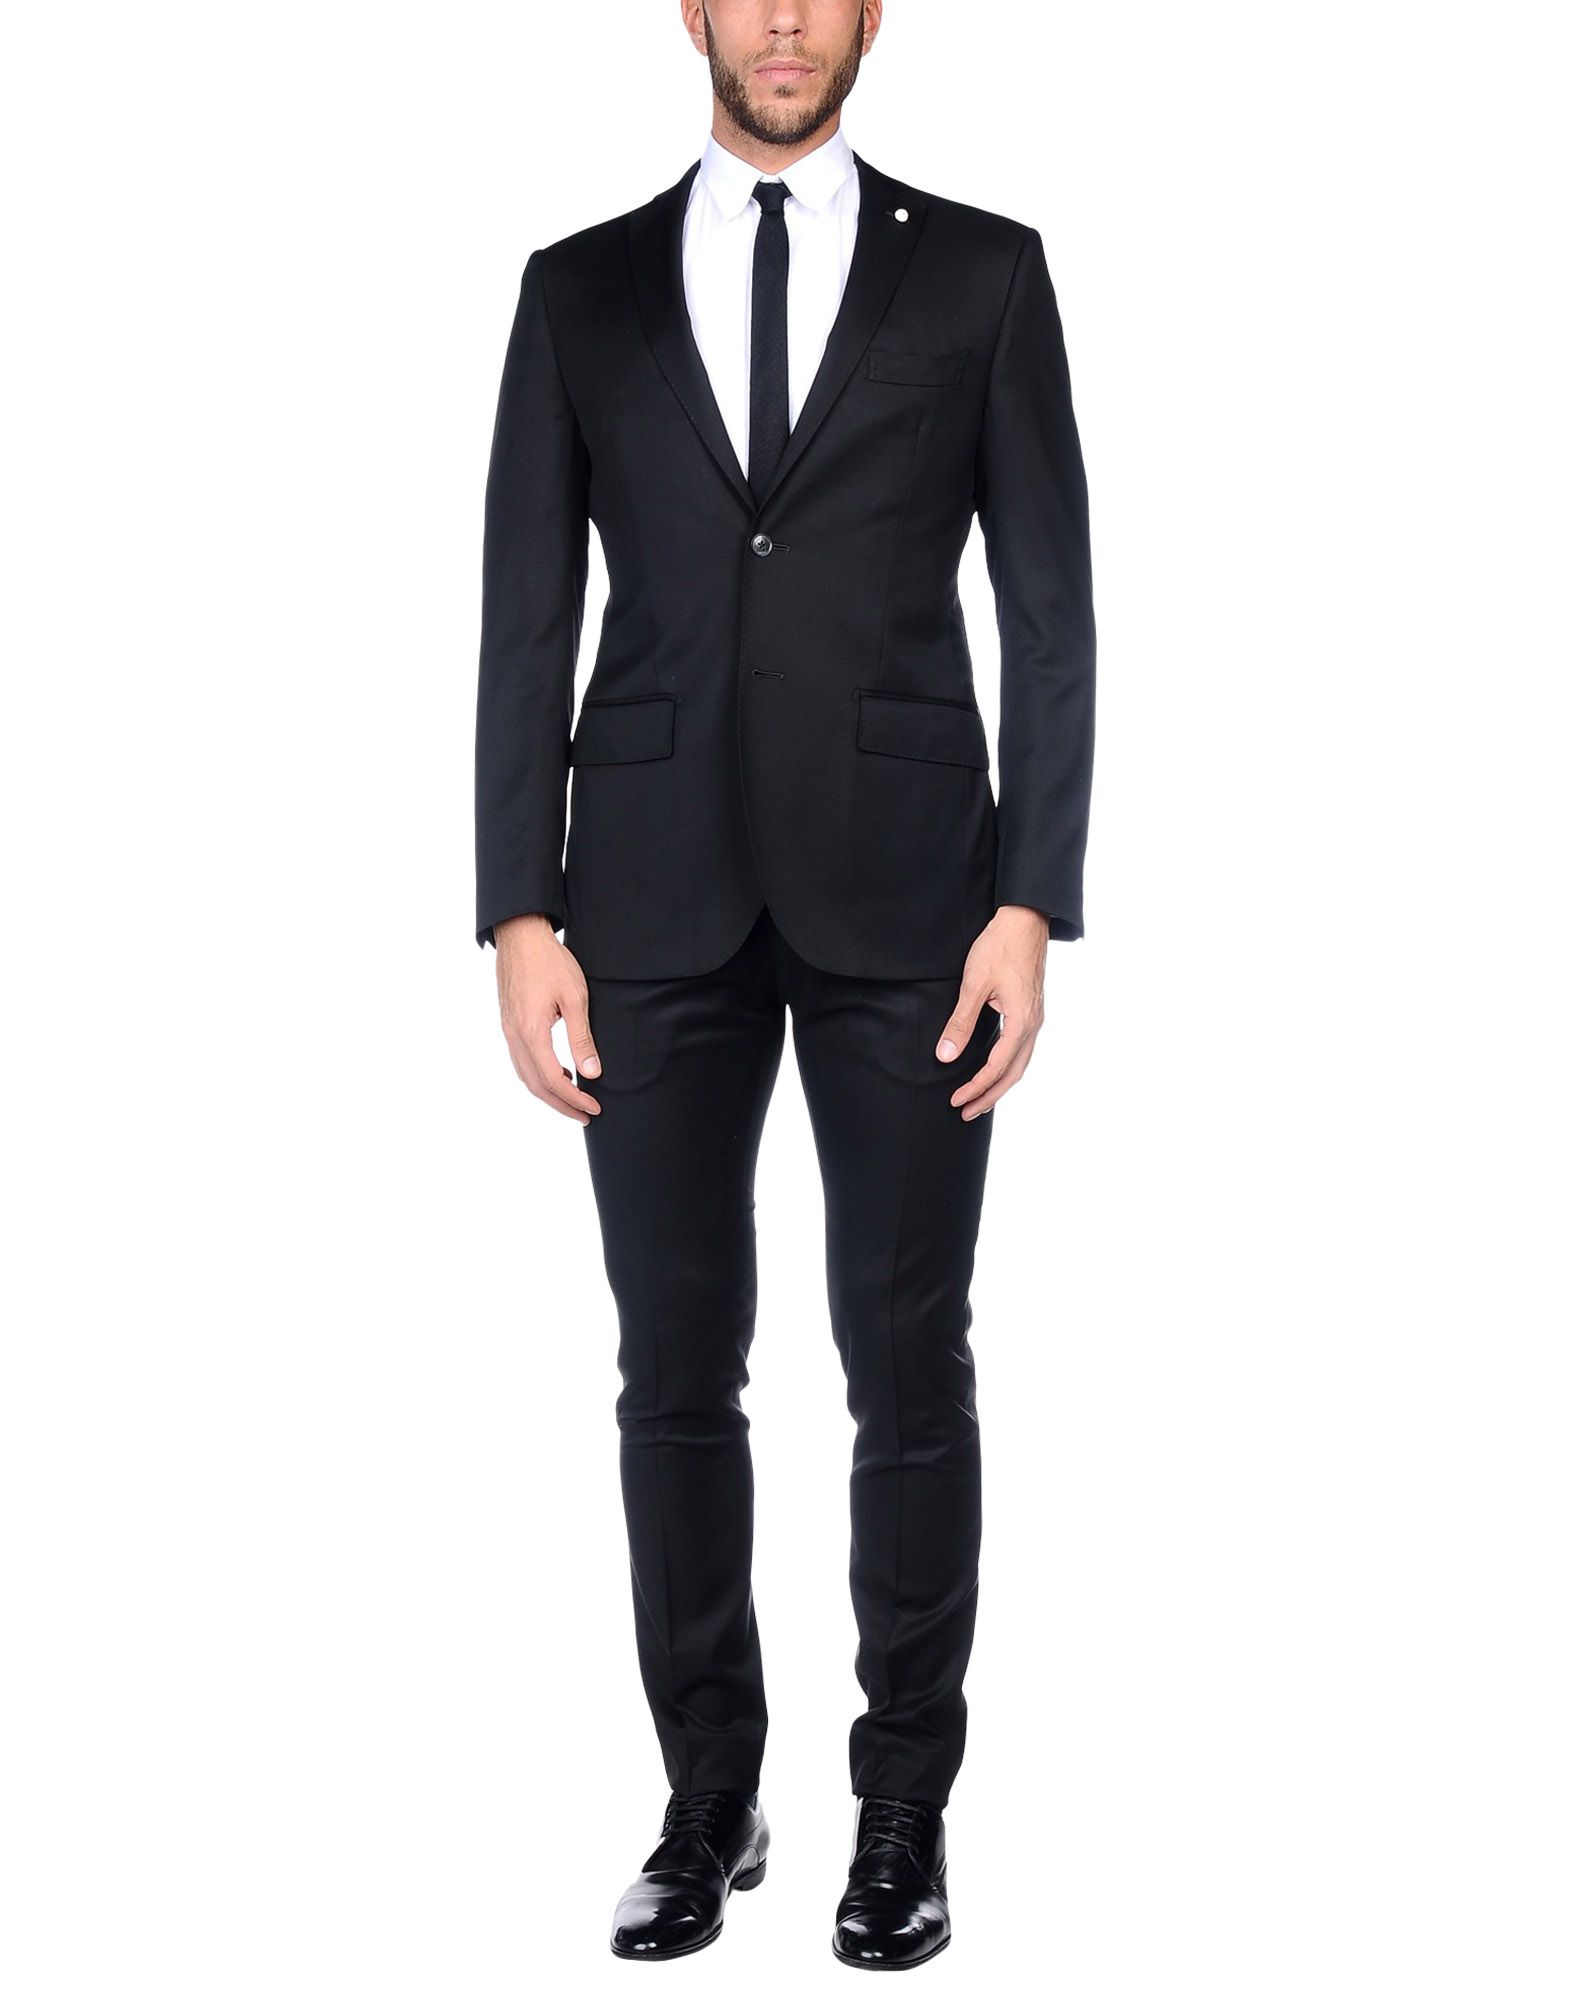 《送料無料》LUIGI BIANCHI Mantova メンズ スーツ ブラック 54 スーパー110 ウール 100%